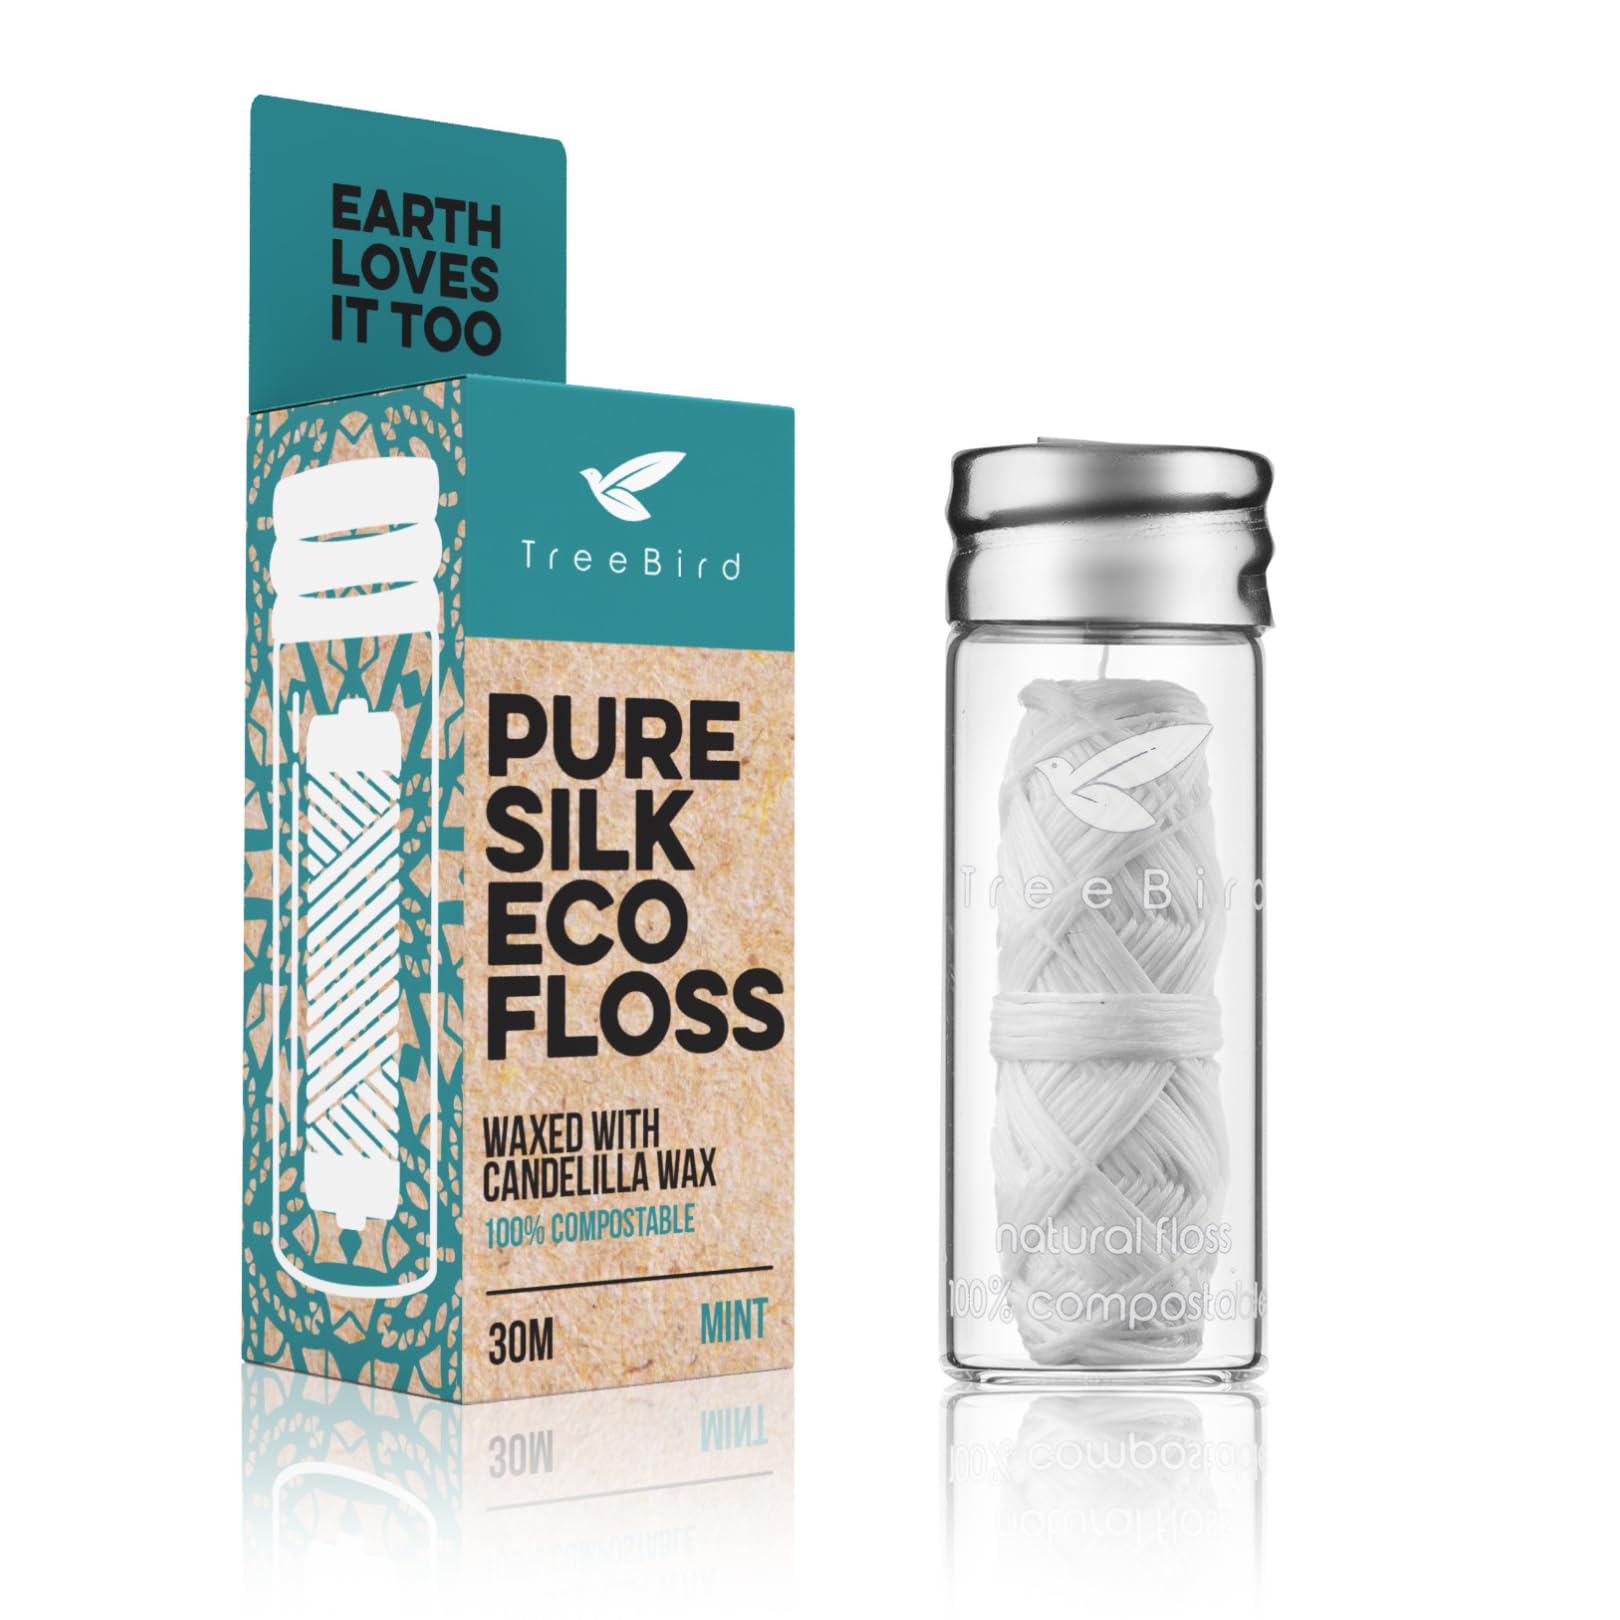 TreeBird: Biodegradable Silk Dental Floss